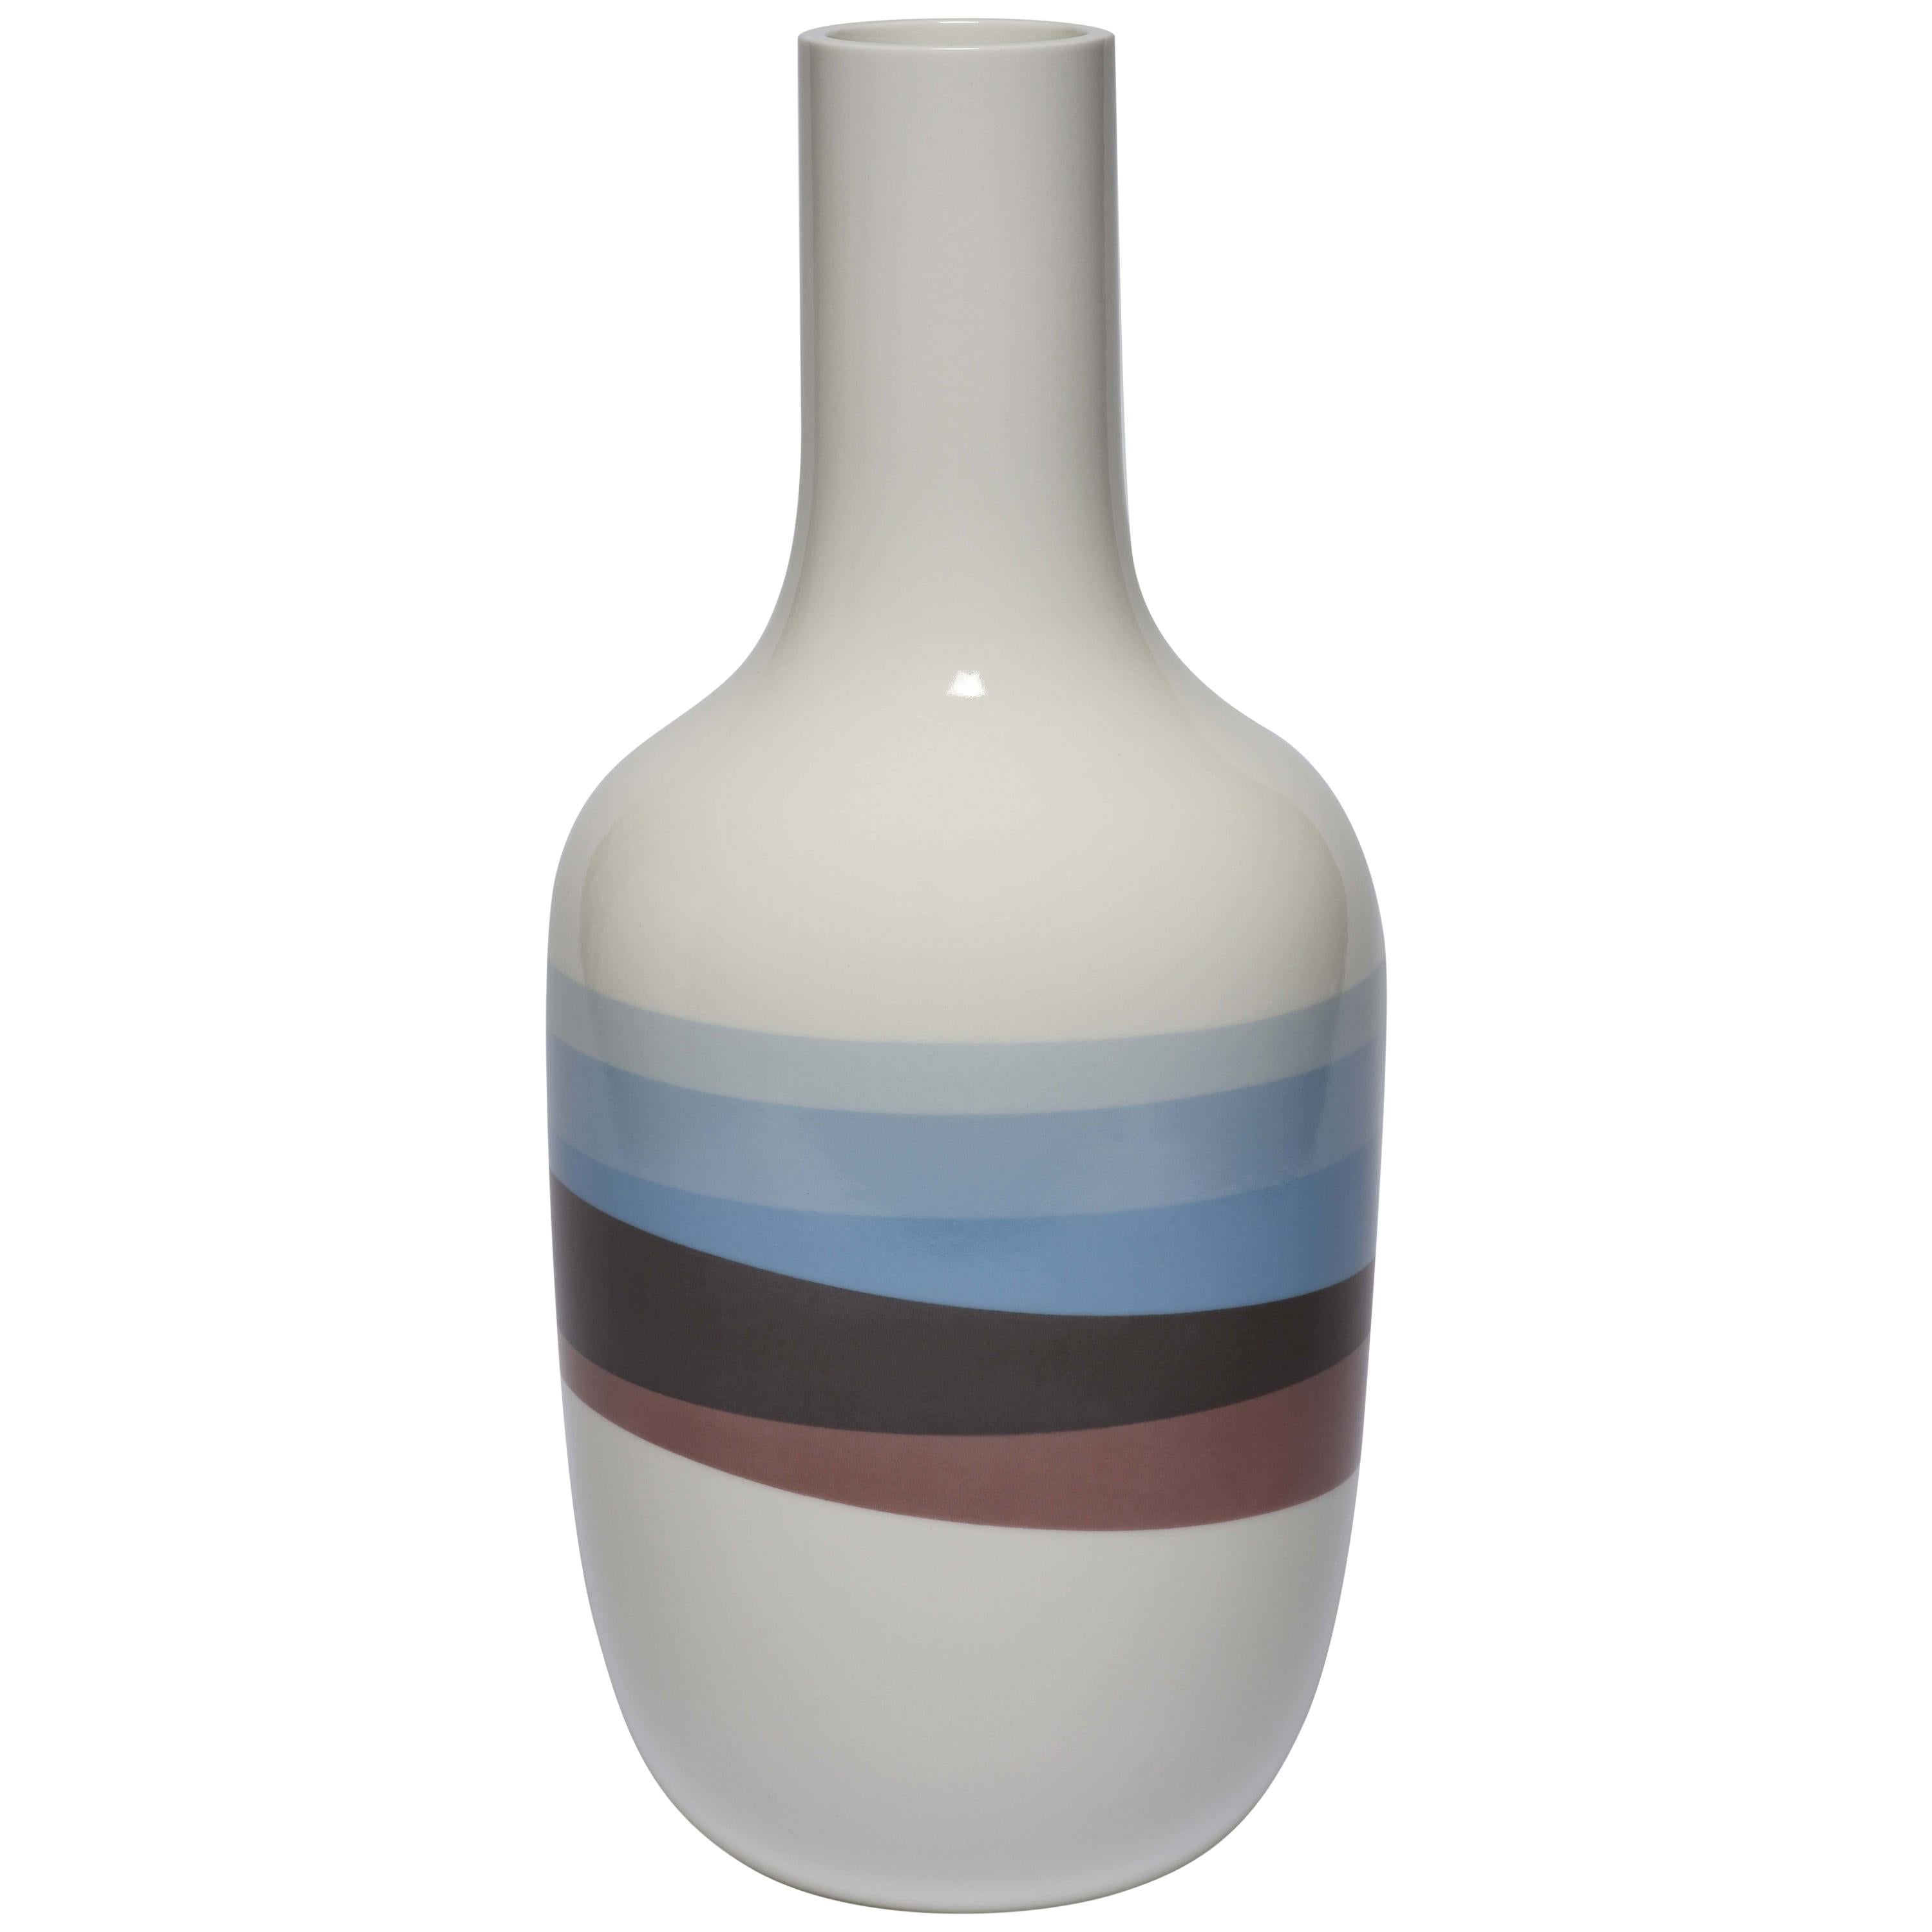 Scholten & Baijings 2.6 Vase in Porcelain by Manufacture Nationale de Sèvres For Sale